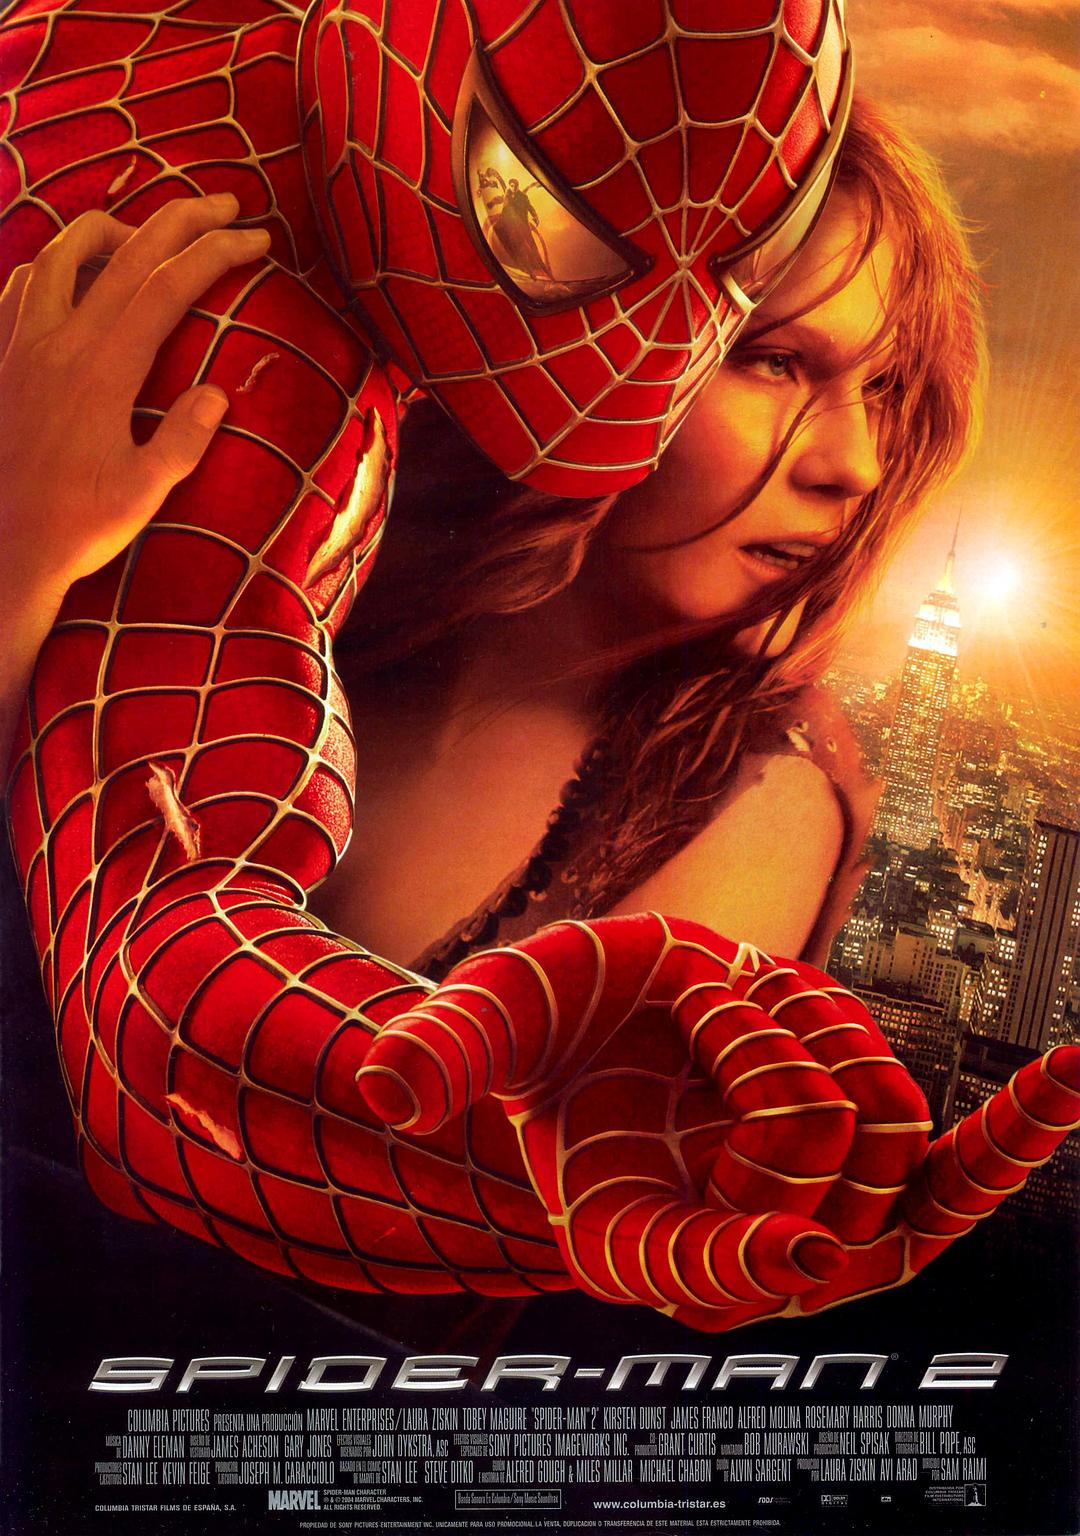 蜘蛛侠2.Spider-Man.2.2004.Remastered.1080p.BluRay.Remux.TrueHD.Atmos.7.1@ 36.27GB